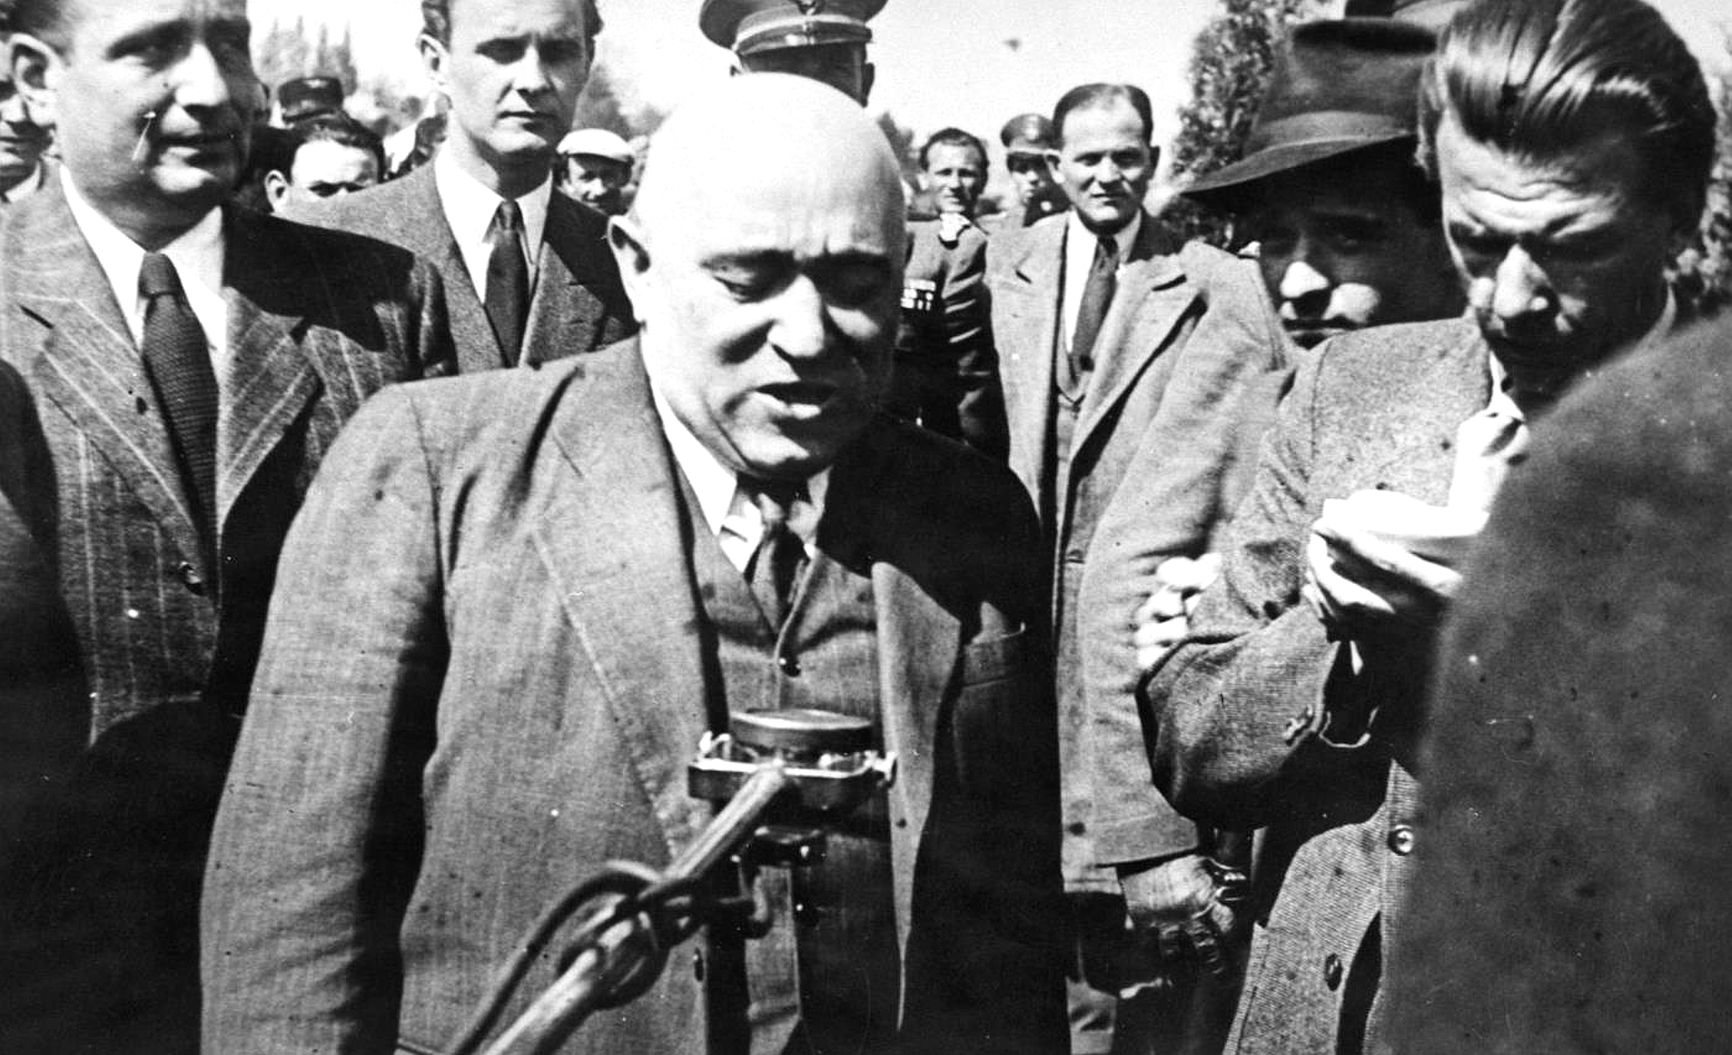 Матьяш Ракоши, которого называли "лучшим учеником Сталина", установил в Венгрии персональную диктатуру и старался скопировать все принципы сталинского управления страной